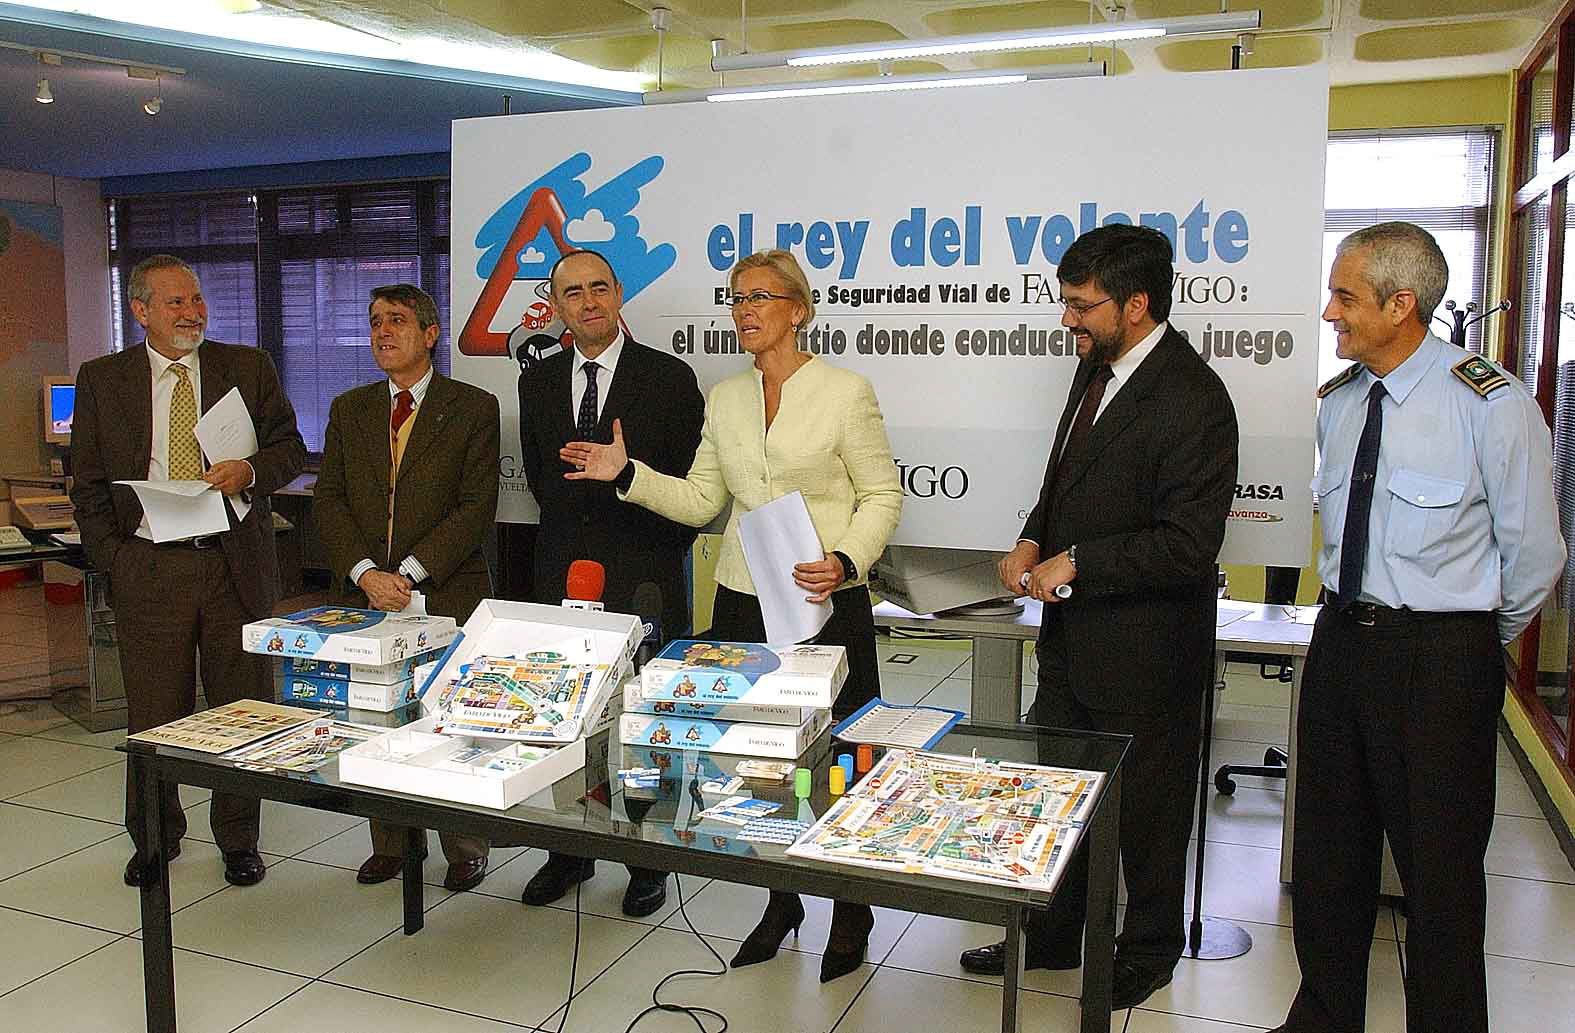 EL subdirector general de faro de Vigo Ceferino de Blas acompañado de la alcaldesa Corina Porro durante la presentación del juego de seguridad vial El Rey del Volante en 2005 Pablo Martínez.jpg